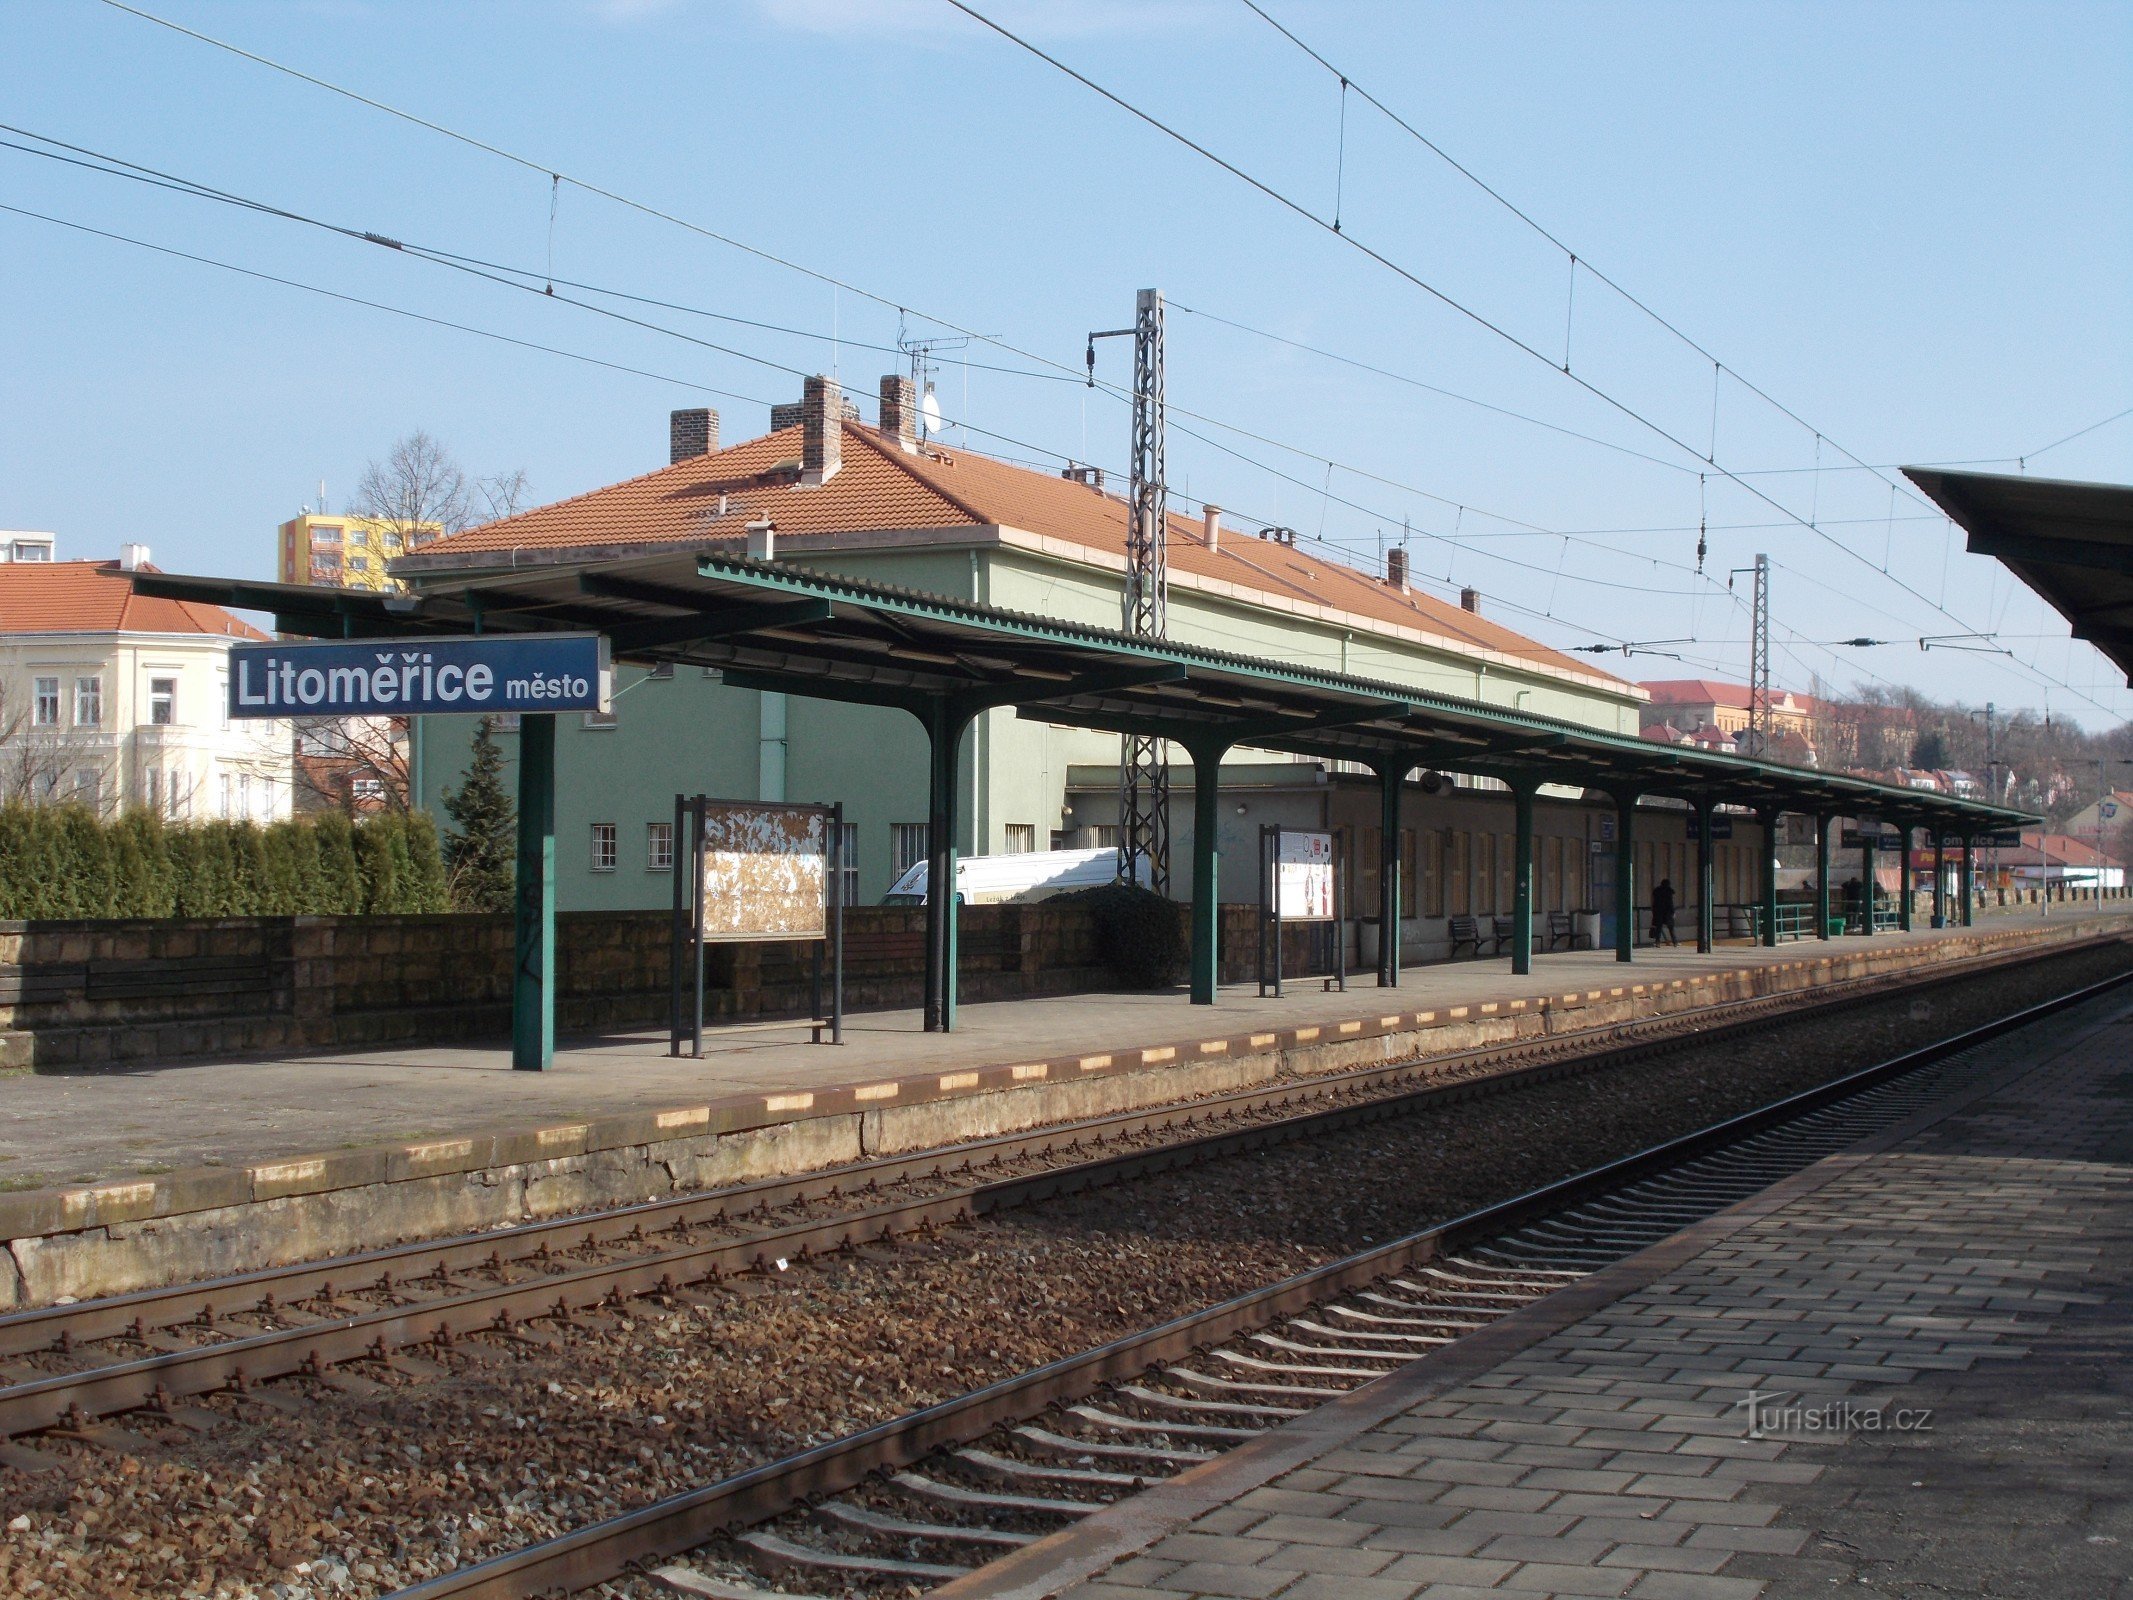 Miasto Litomierzyce - stacja kolejowa